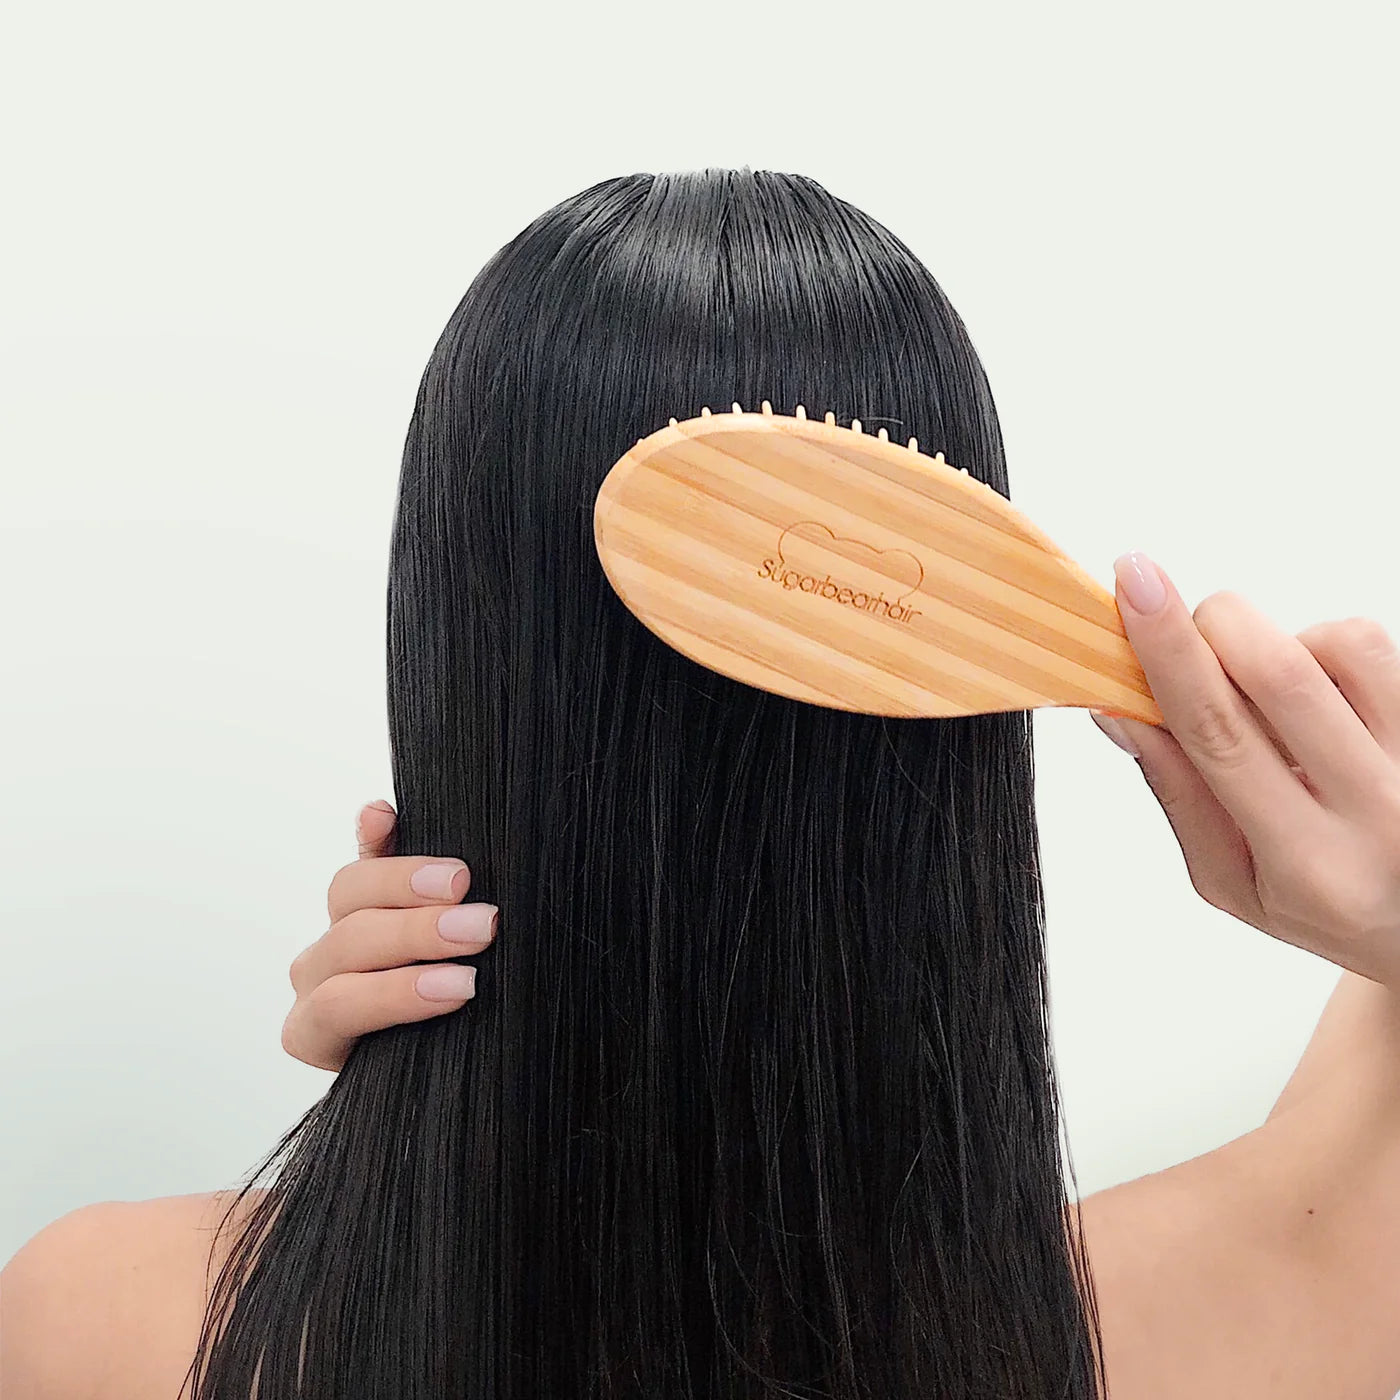 SUGARBEAR Hair Essentials Hair Vitamins 60 Gummies Bamboo Hair Brush And 3 Hair Ties